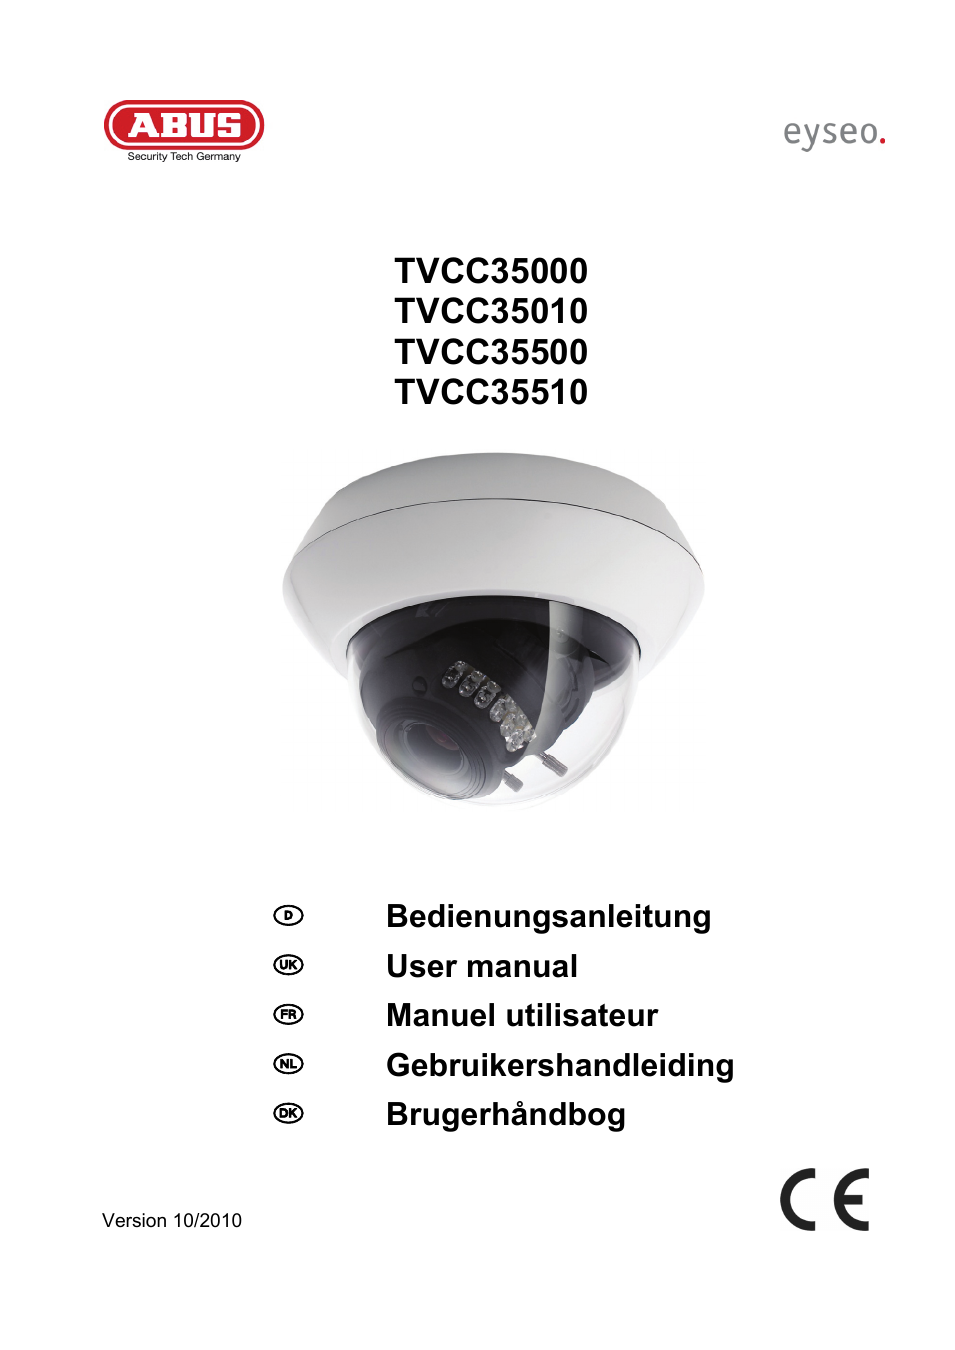 TVCC35500